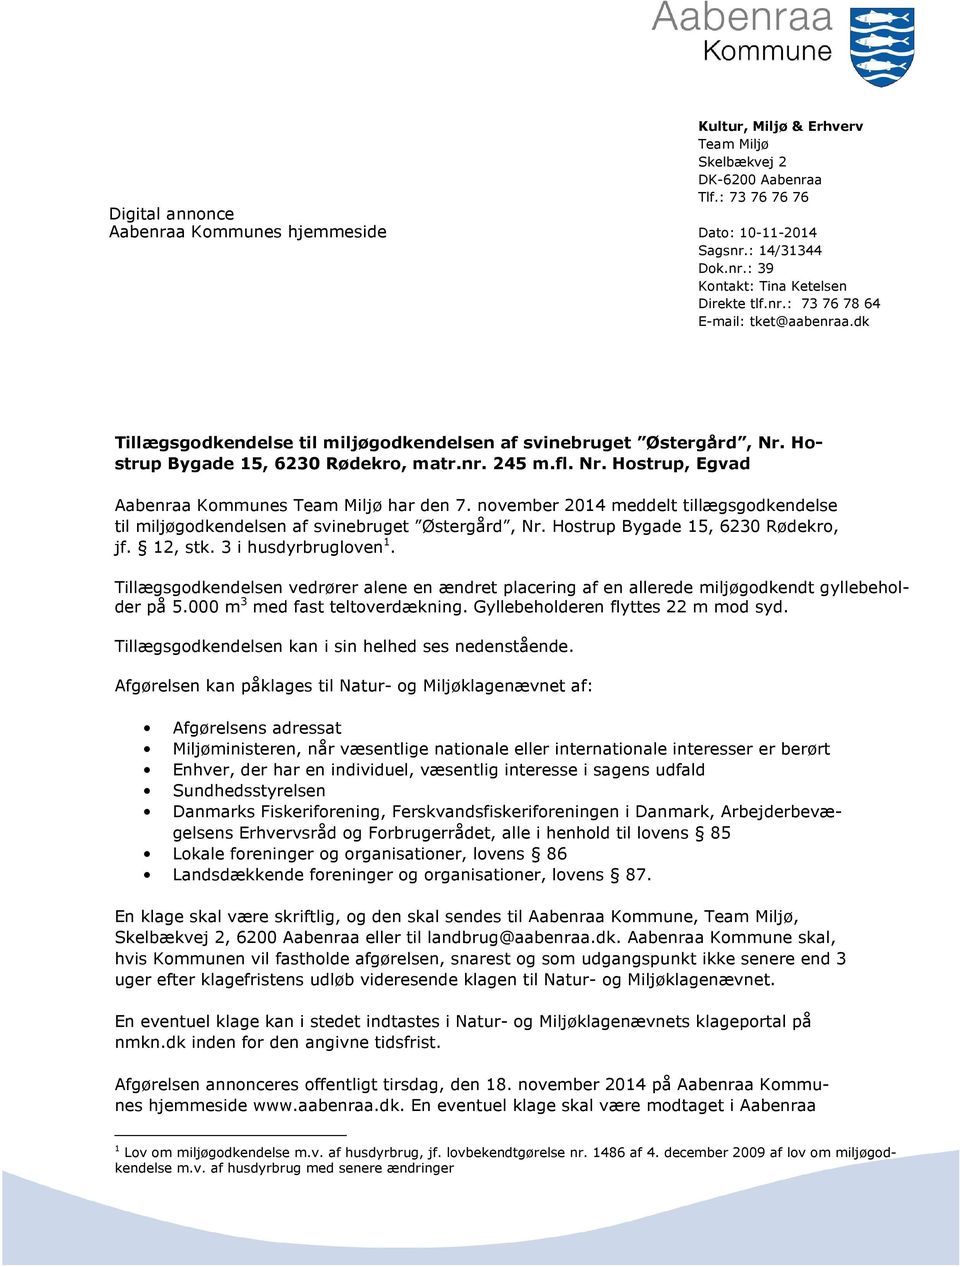 november 2014 meddelt tillægsgodkendelse til miljøgodkendelsen af svinebruget Østergård, Nr. Hostrup Bygade 15, 6230 Rødekro, jf. 12, stk. 3 i husdyrbrugloven 1.